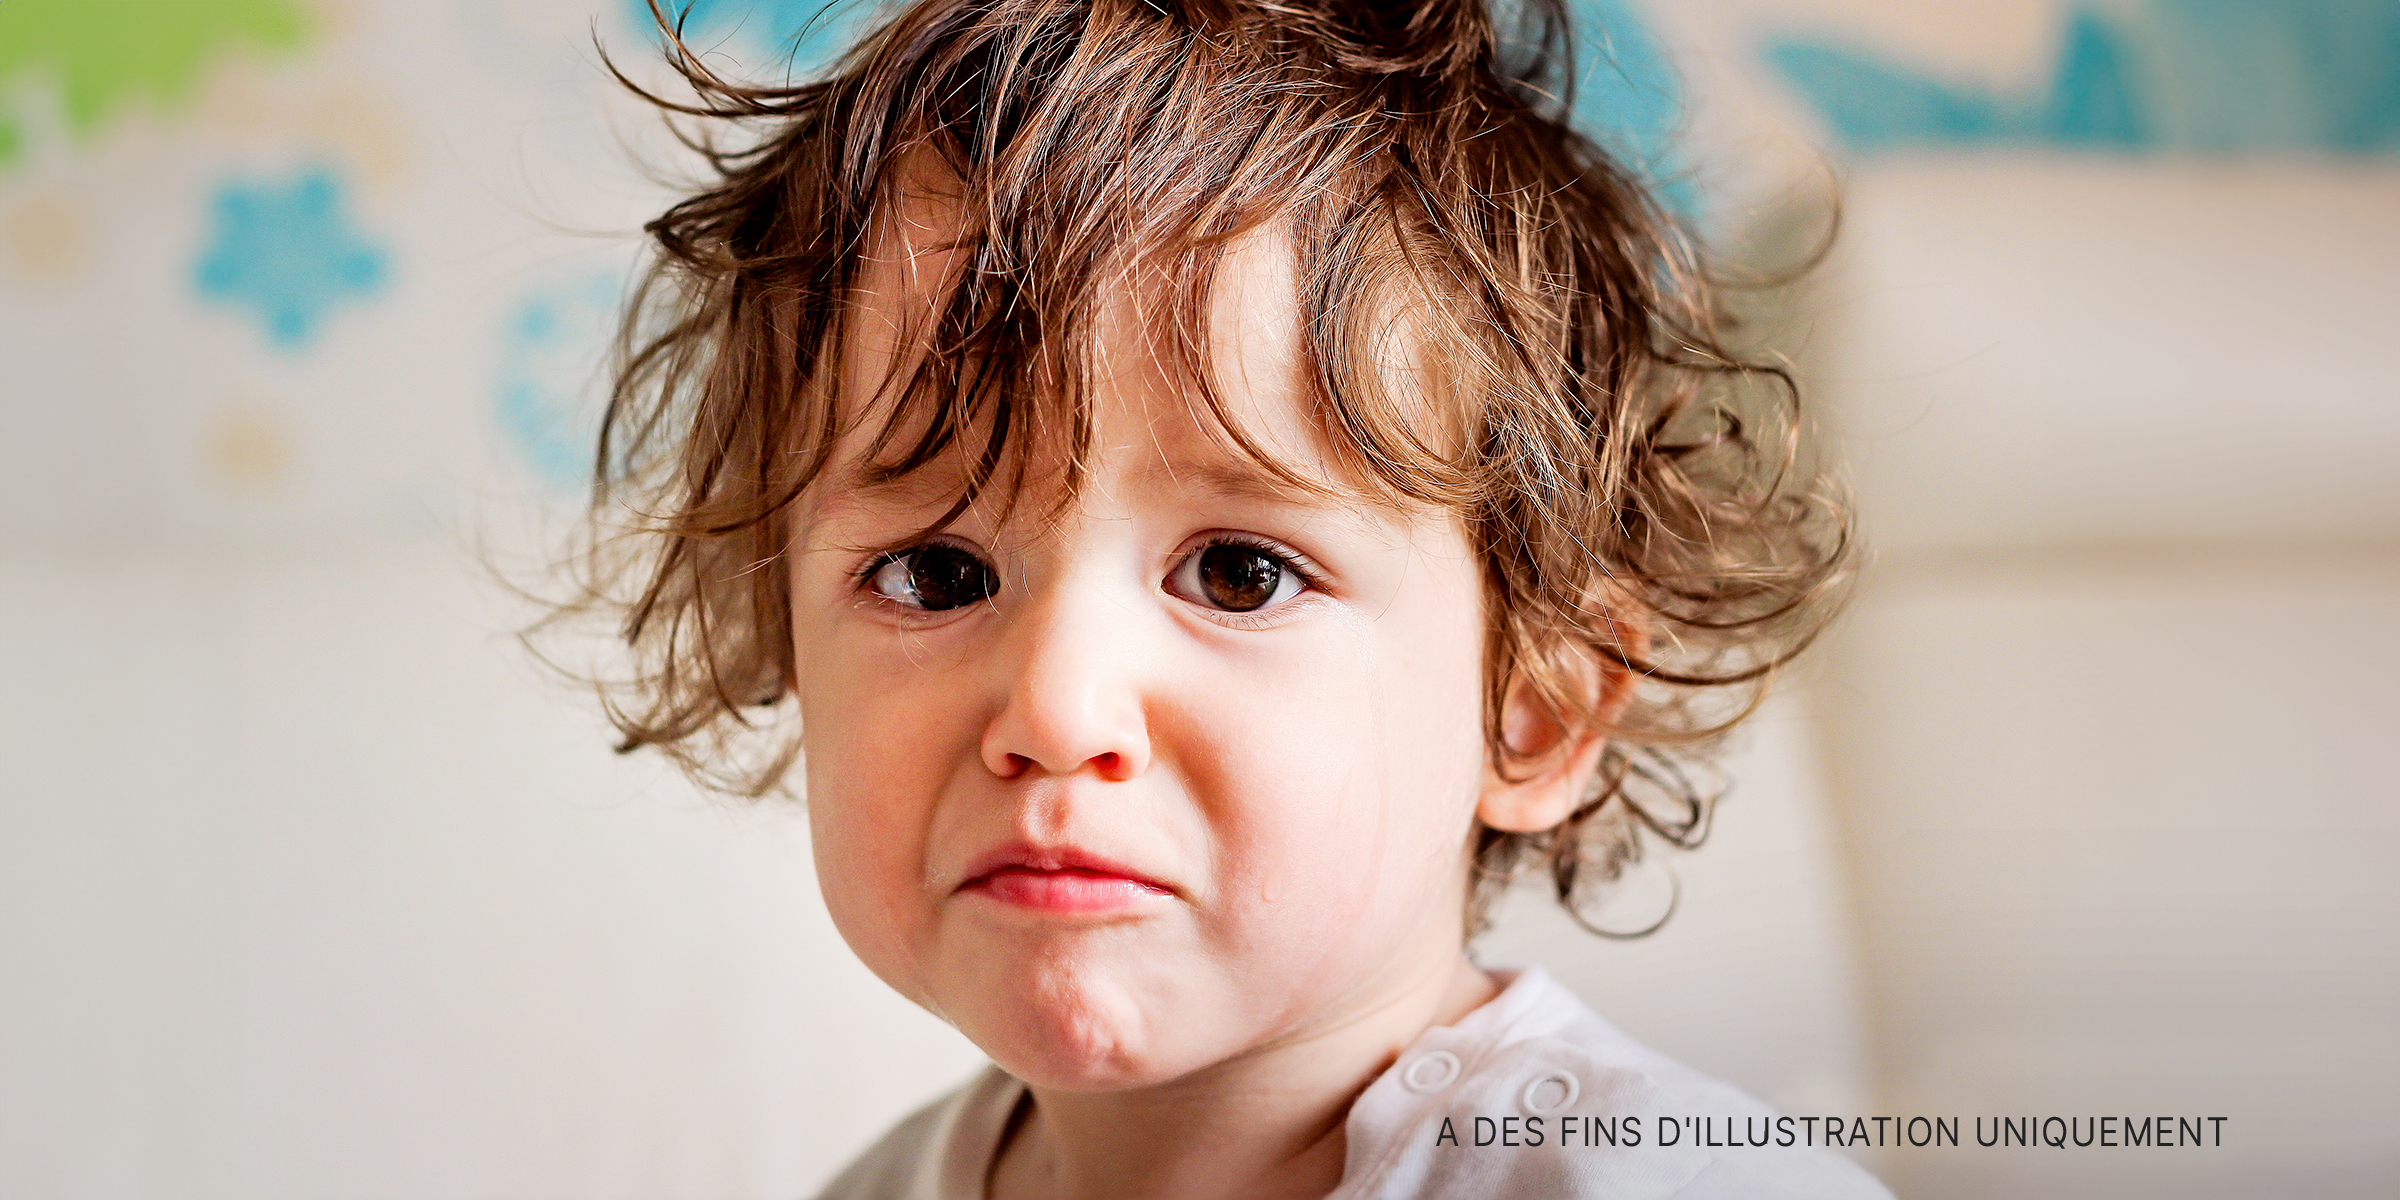 Un jeune garçon qui pleure | Source : Shutterstock